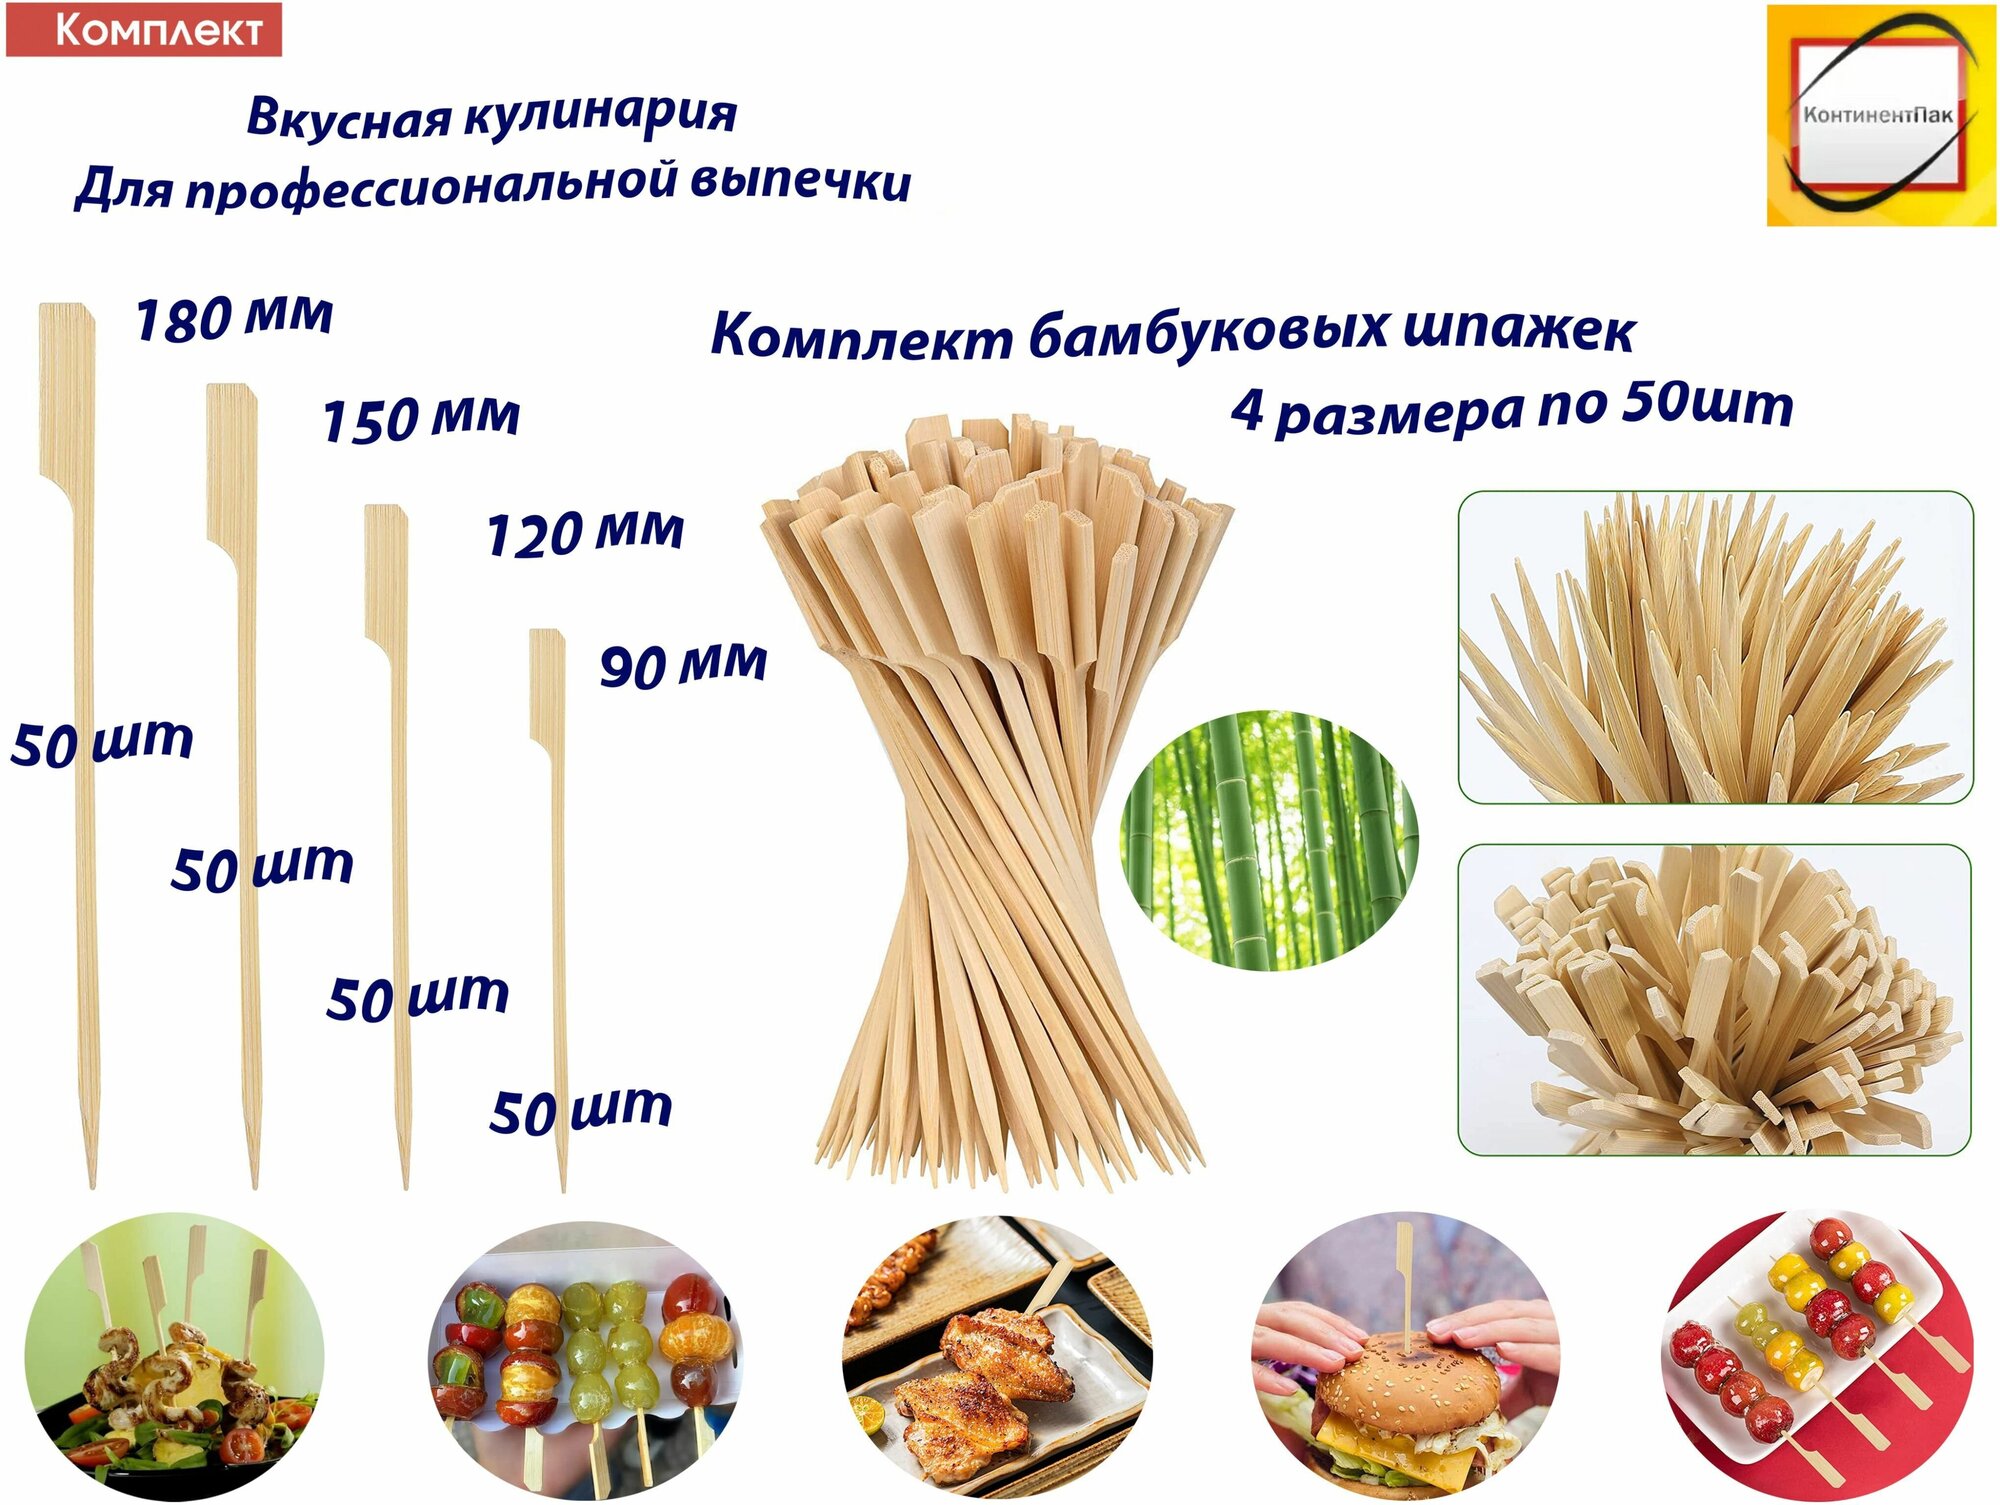 Комплект шпажек для канапе Гольф, 4 размера 90,120,150,180мм по 50шт и 4 размера комплект бамбуковых шампуров по 100шт - фотография № 3